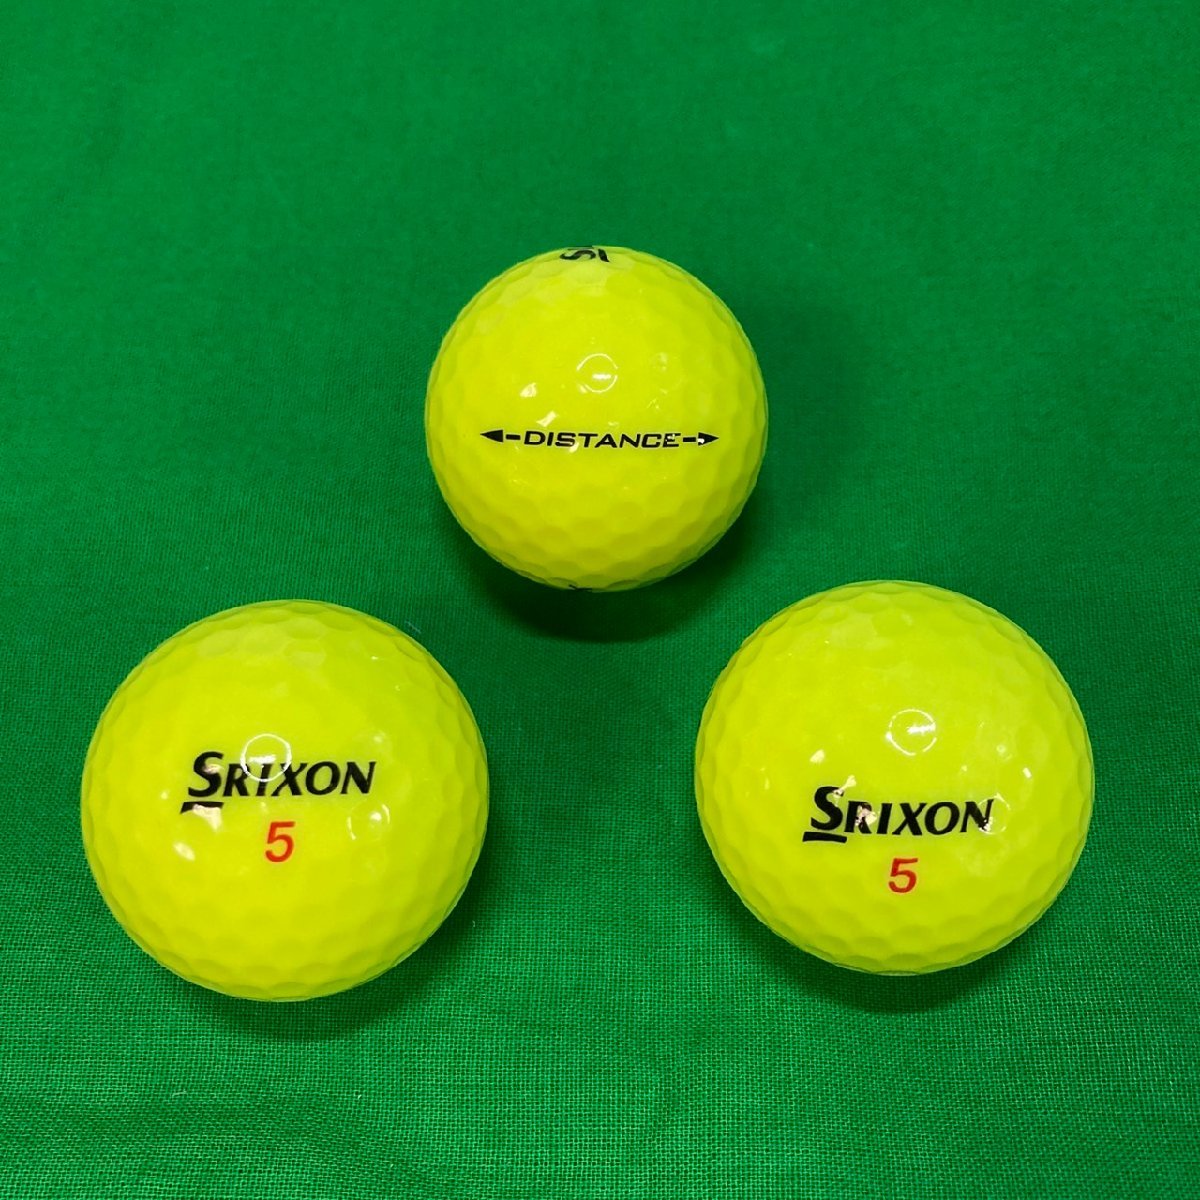 未使用品 SRIXON スリクソン DISTANCE DUNLOP ダンロップ 黄色 イエロー ゴルフボール